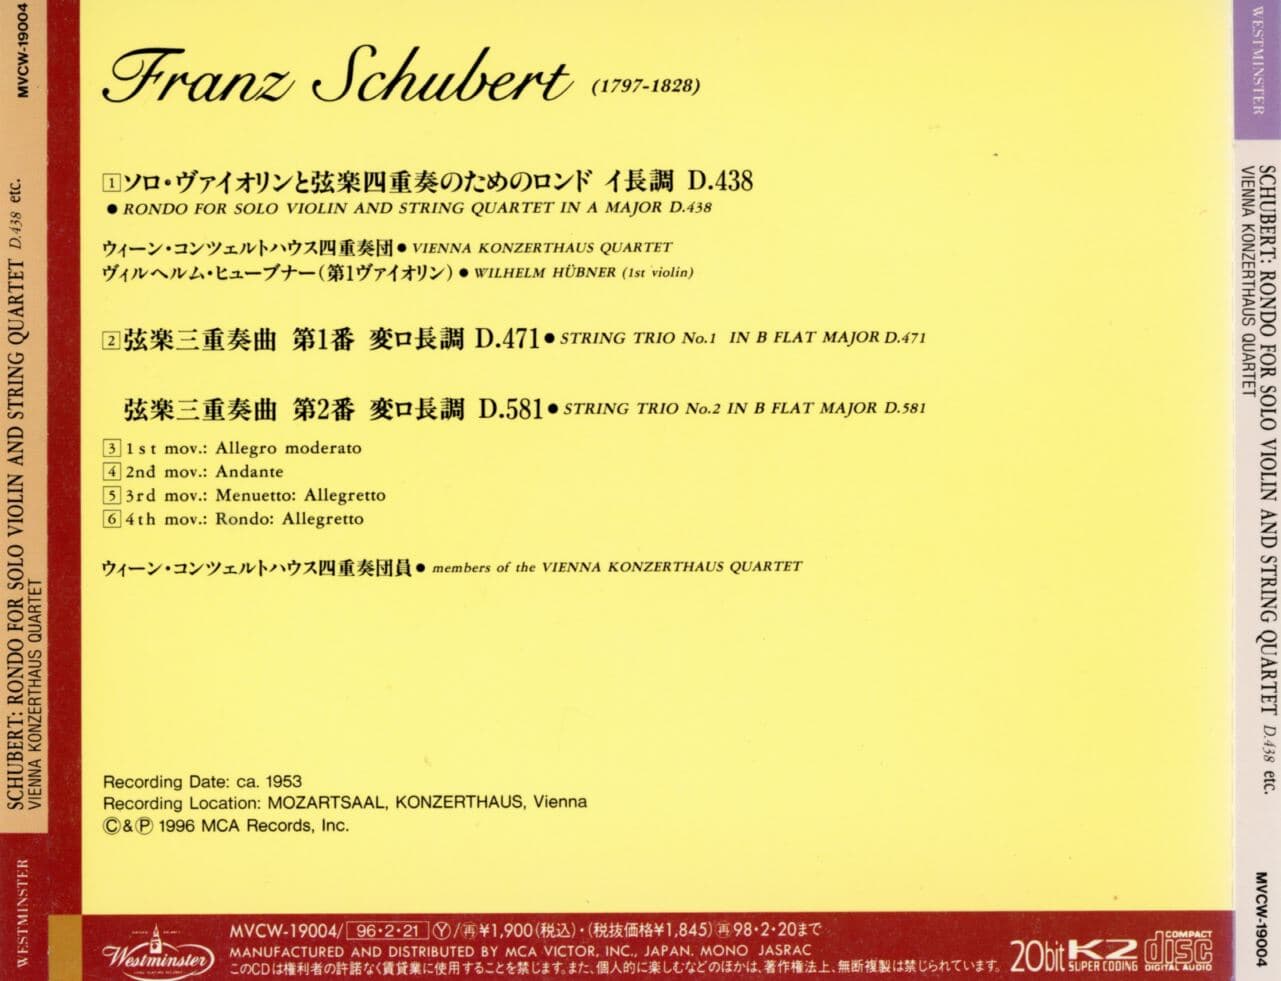 빈 콘체르트하우스 콰르텟 - Vienna Konzerthaus Quartet - Schubert String Trio No.1 In B Flat Major D.471 [일본발매]